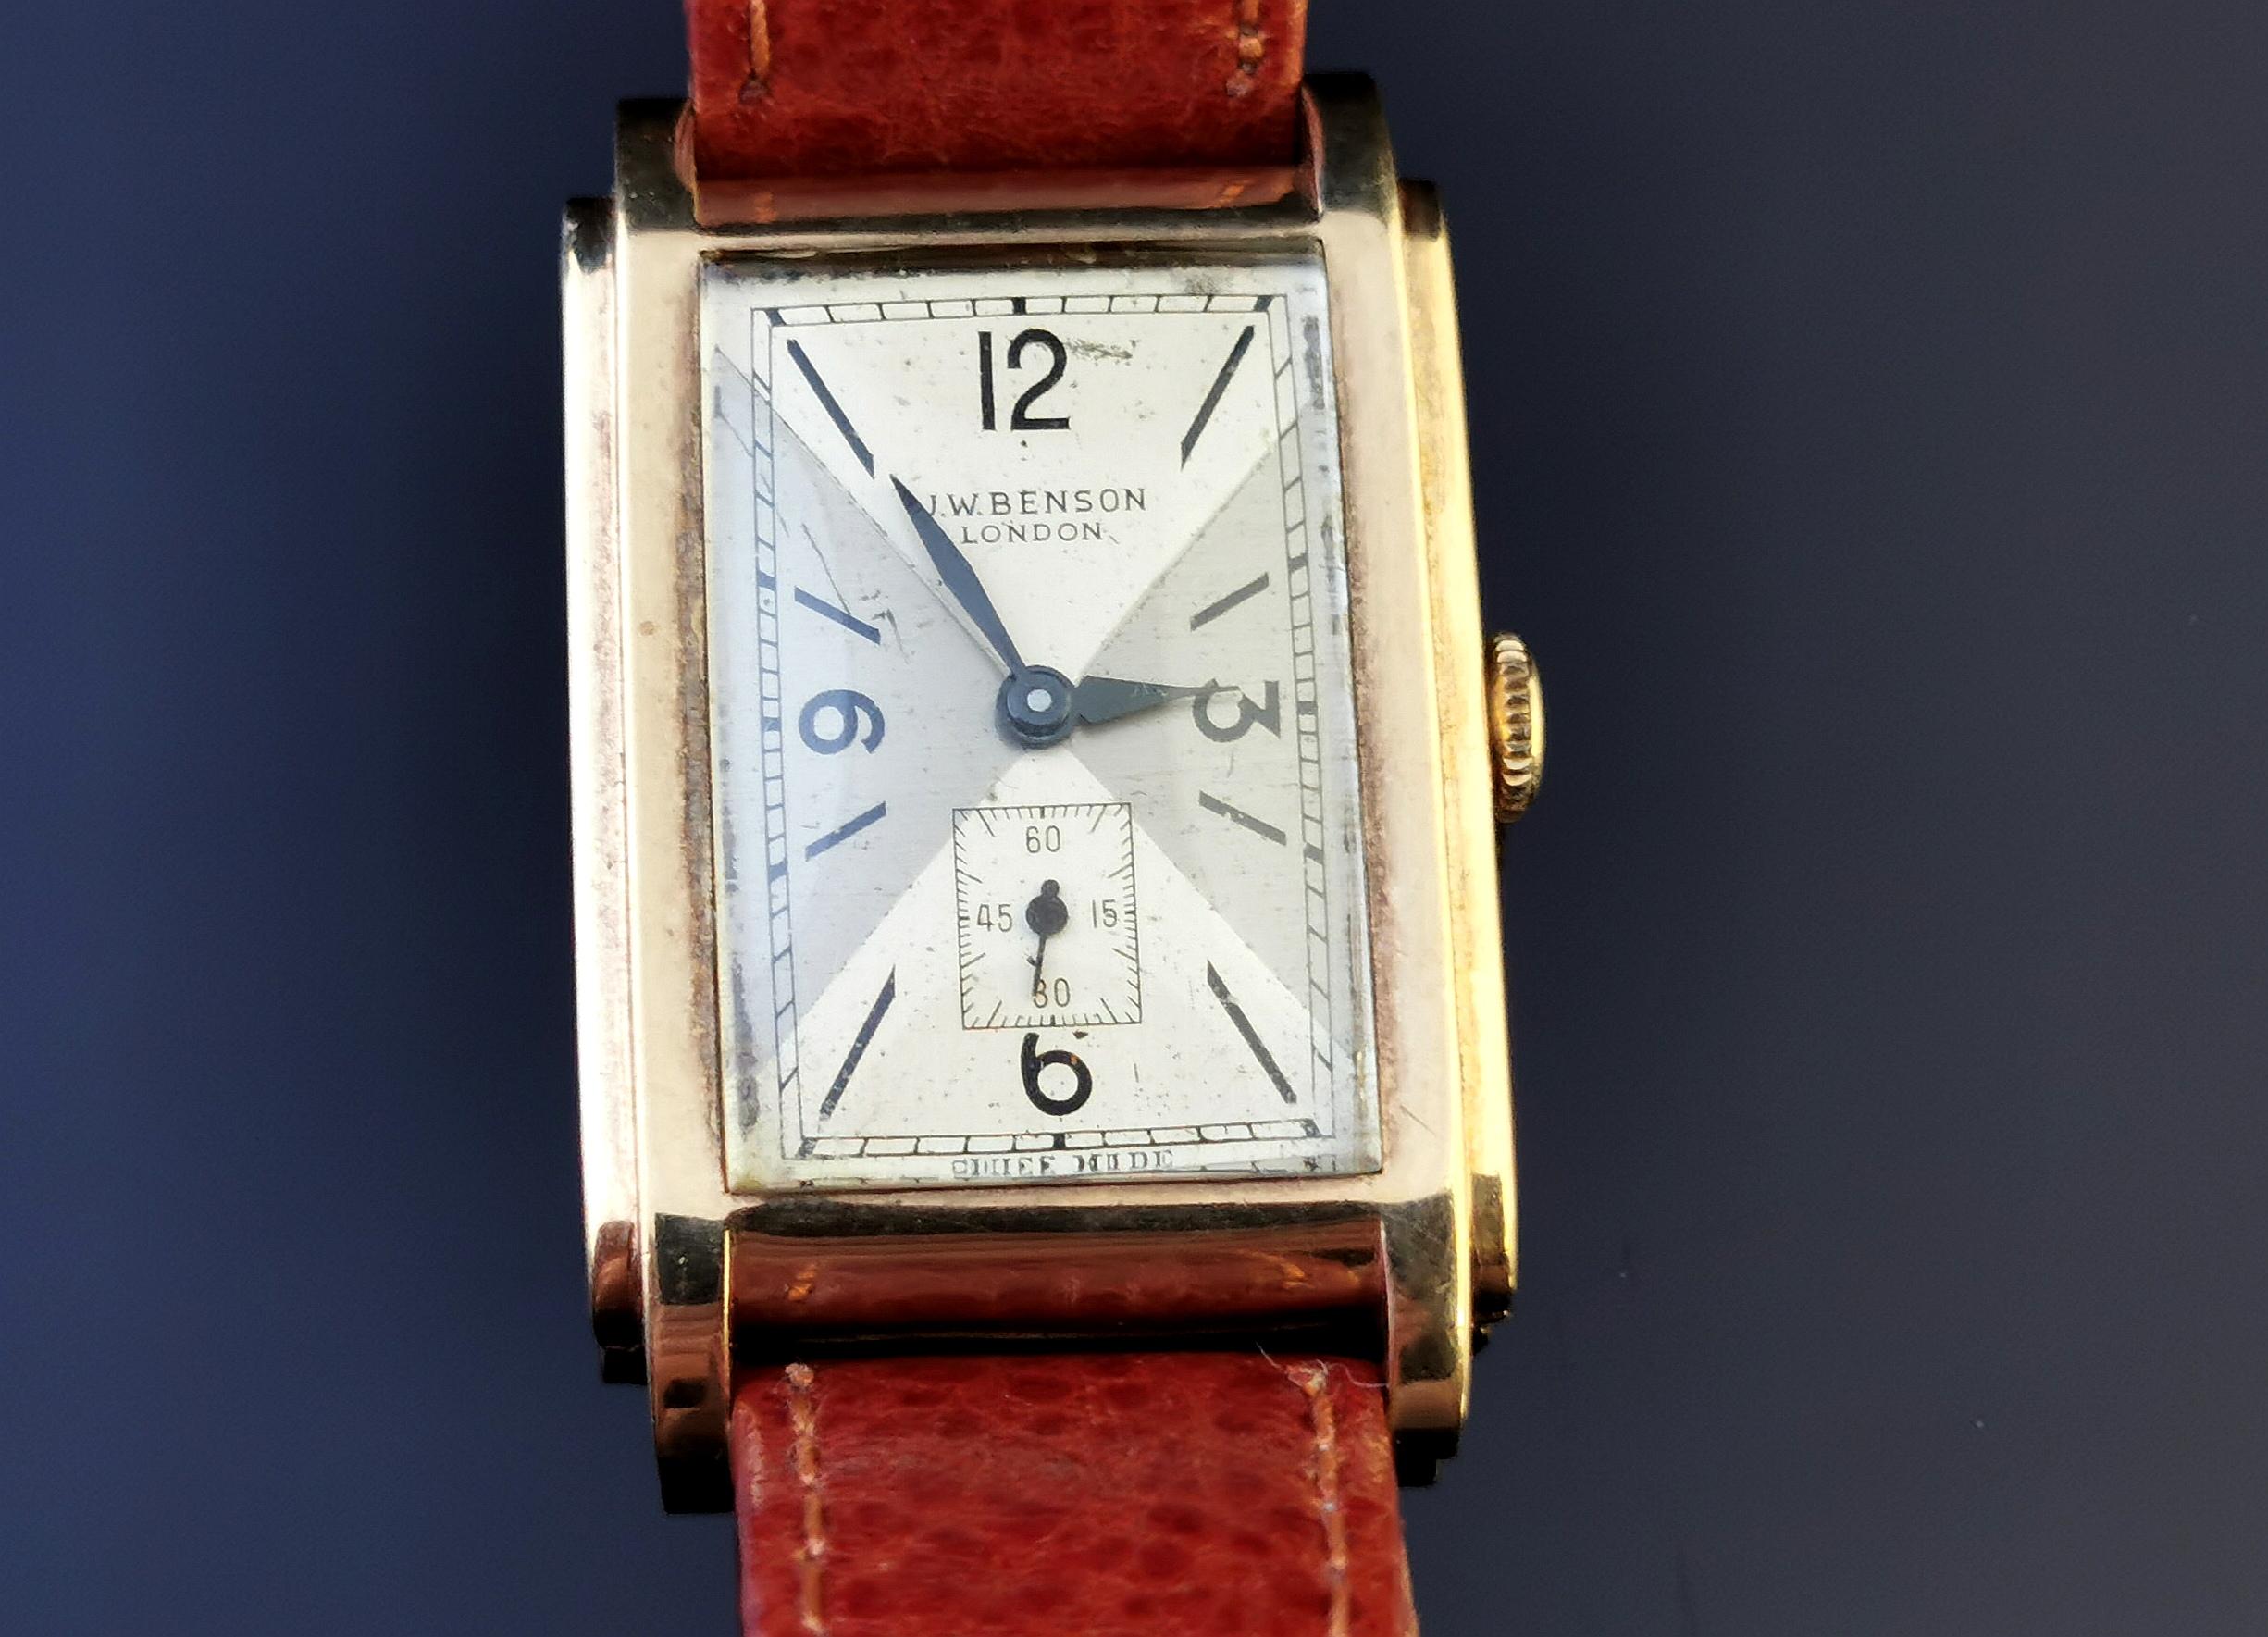 Vintage Gents Yellow Gold Wristwatch, J W Benson  5